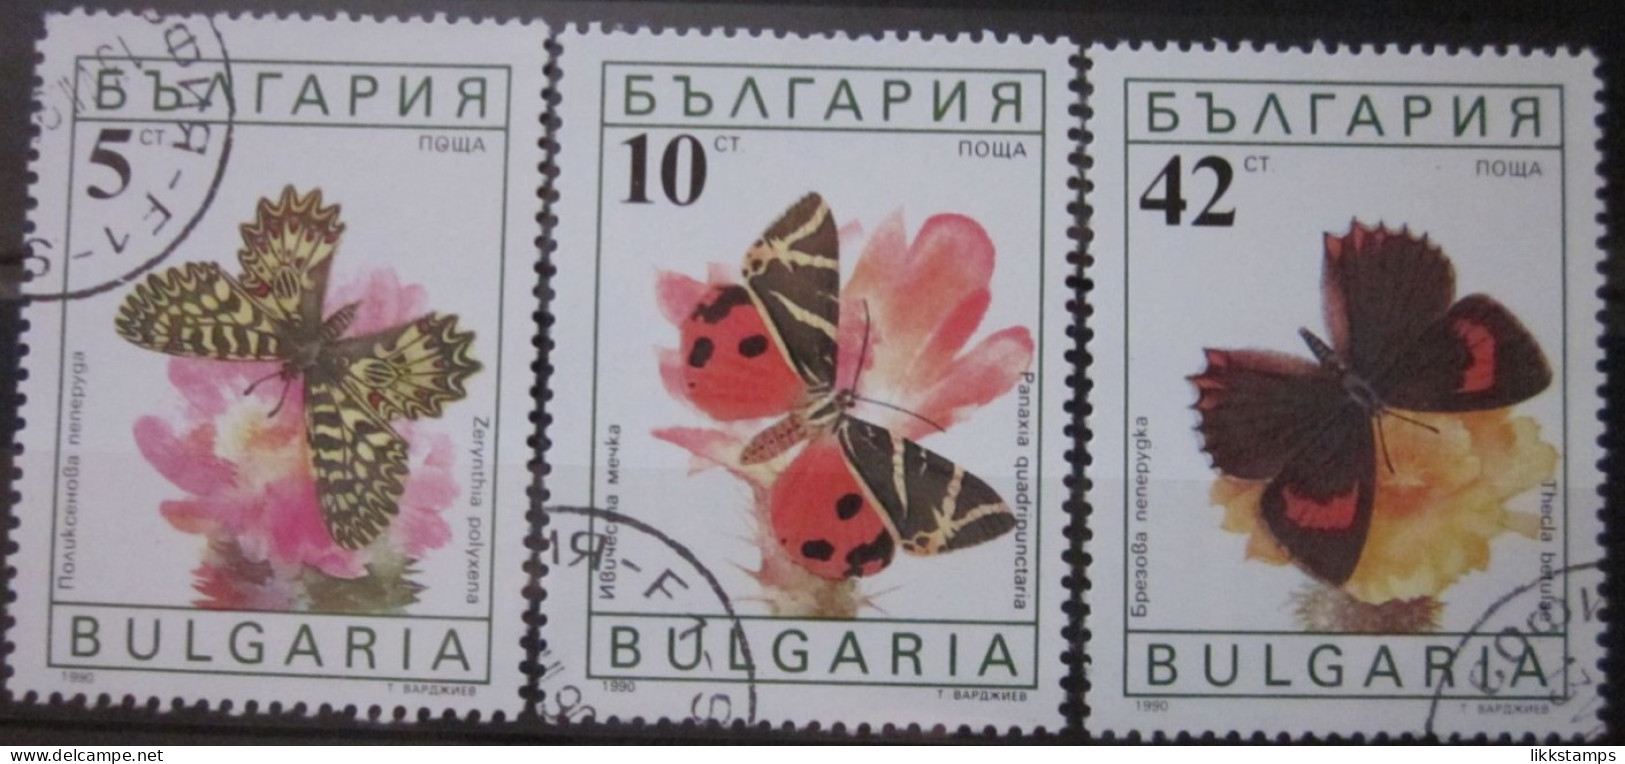 BULGARIA 1990 ~ S.G. 3699, 3700 & 3703, ~ BUTTERFLIES AND MOTHS. ~  VFU #02959 - Gebraucht